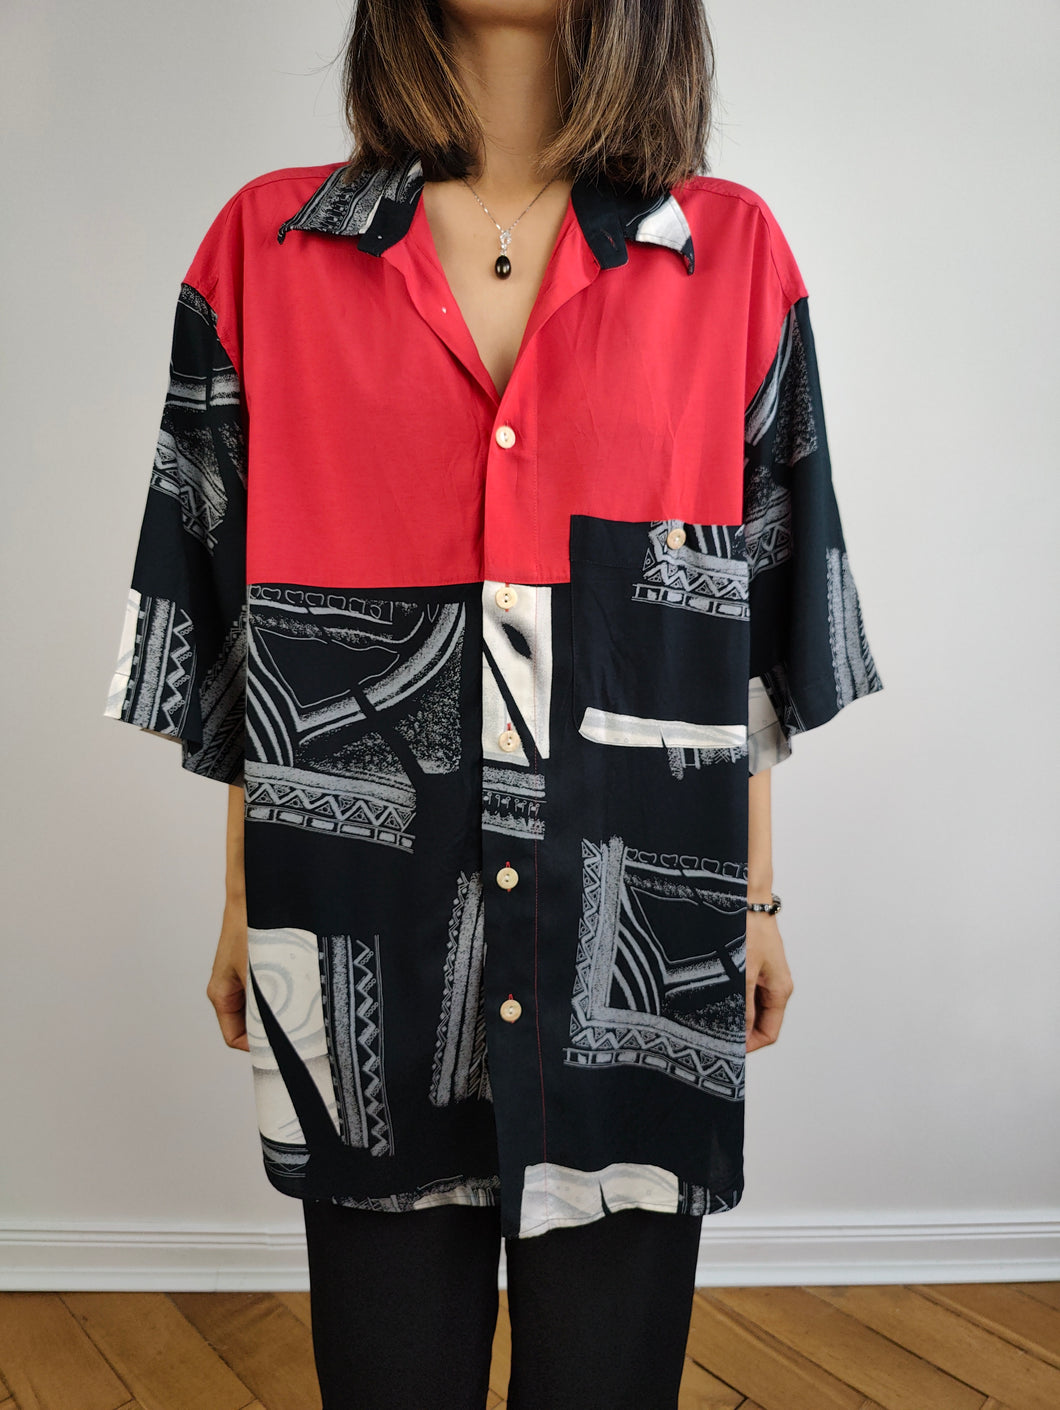 Das Viskose-Hemd mit rotem, schwarzem und weißem Print | Vintage Francisco L'Avantgarde hergestellt in Italien Kurzarm verrücktes Muster Tribal Unisex Männer XL